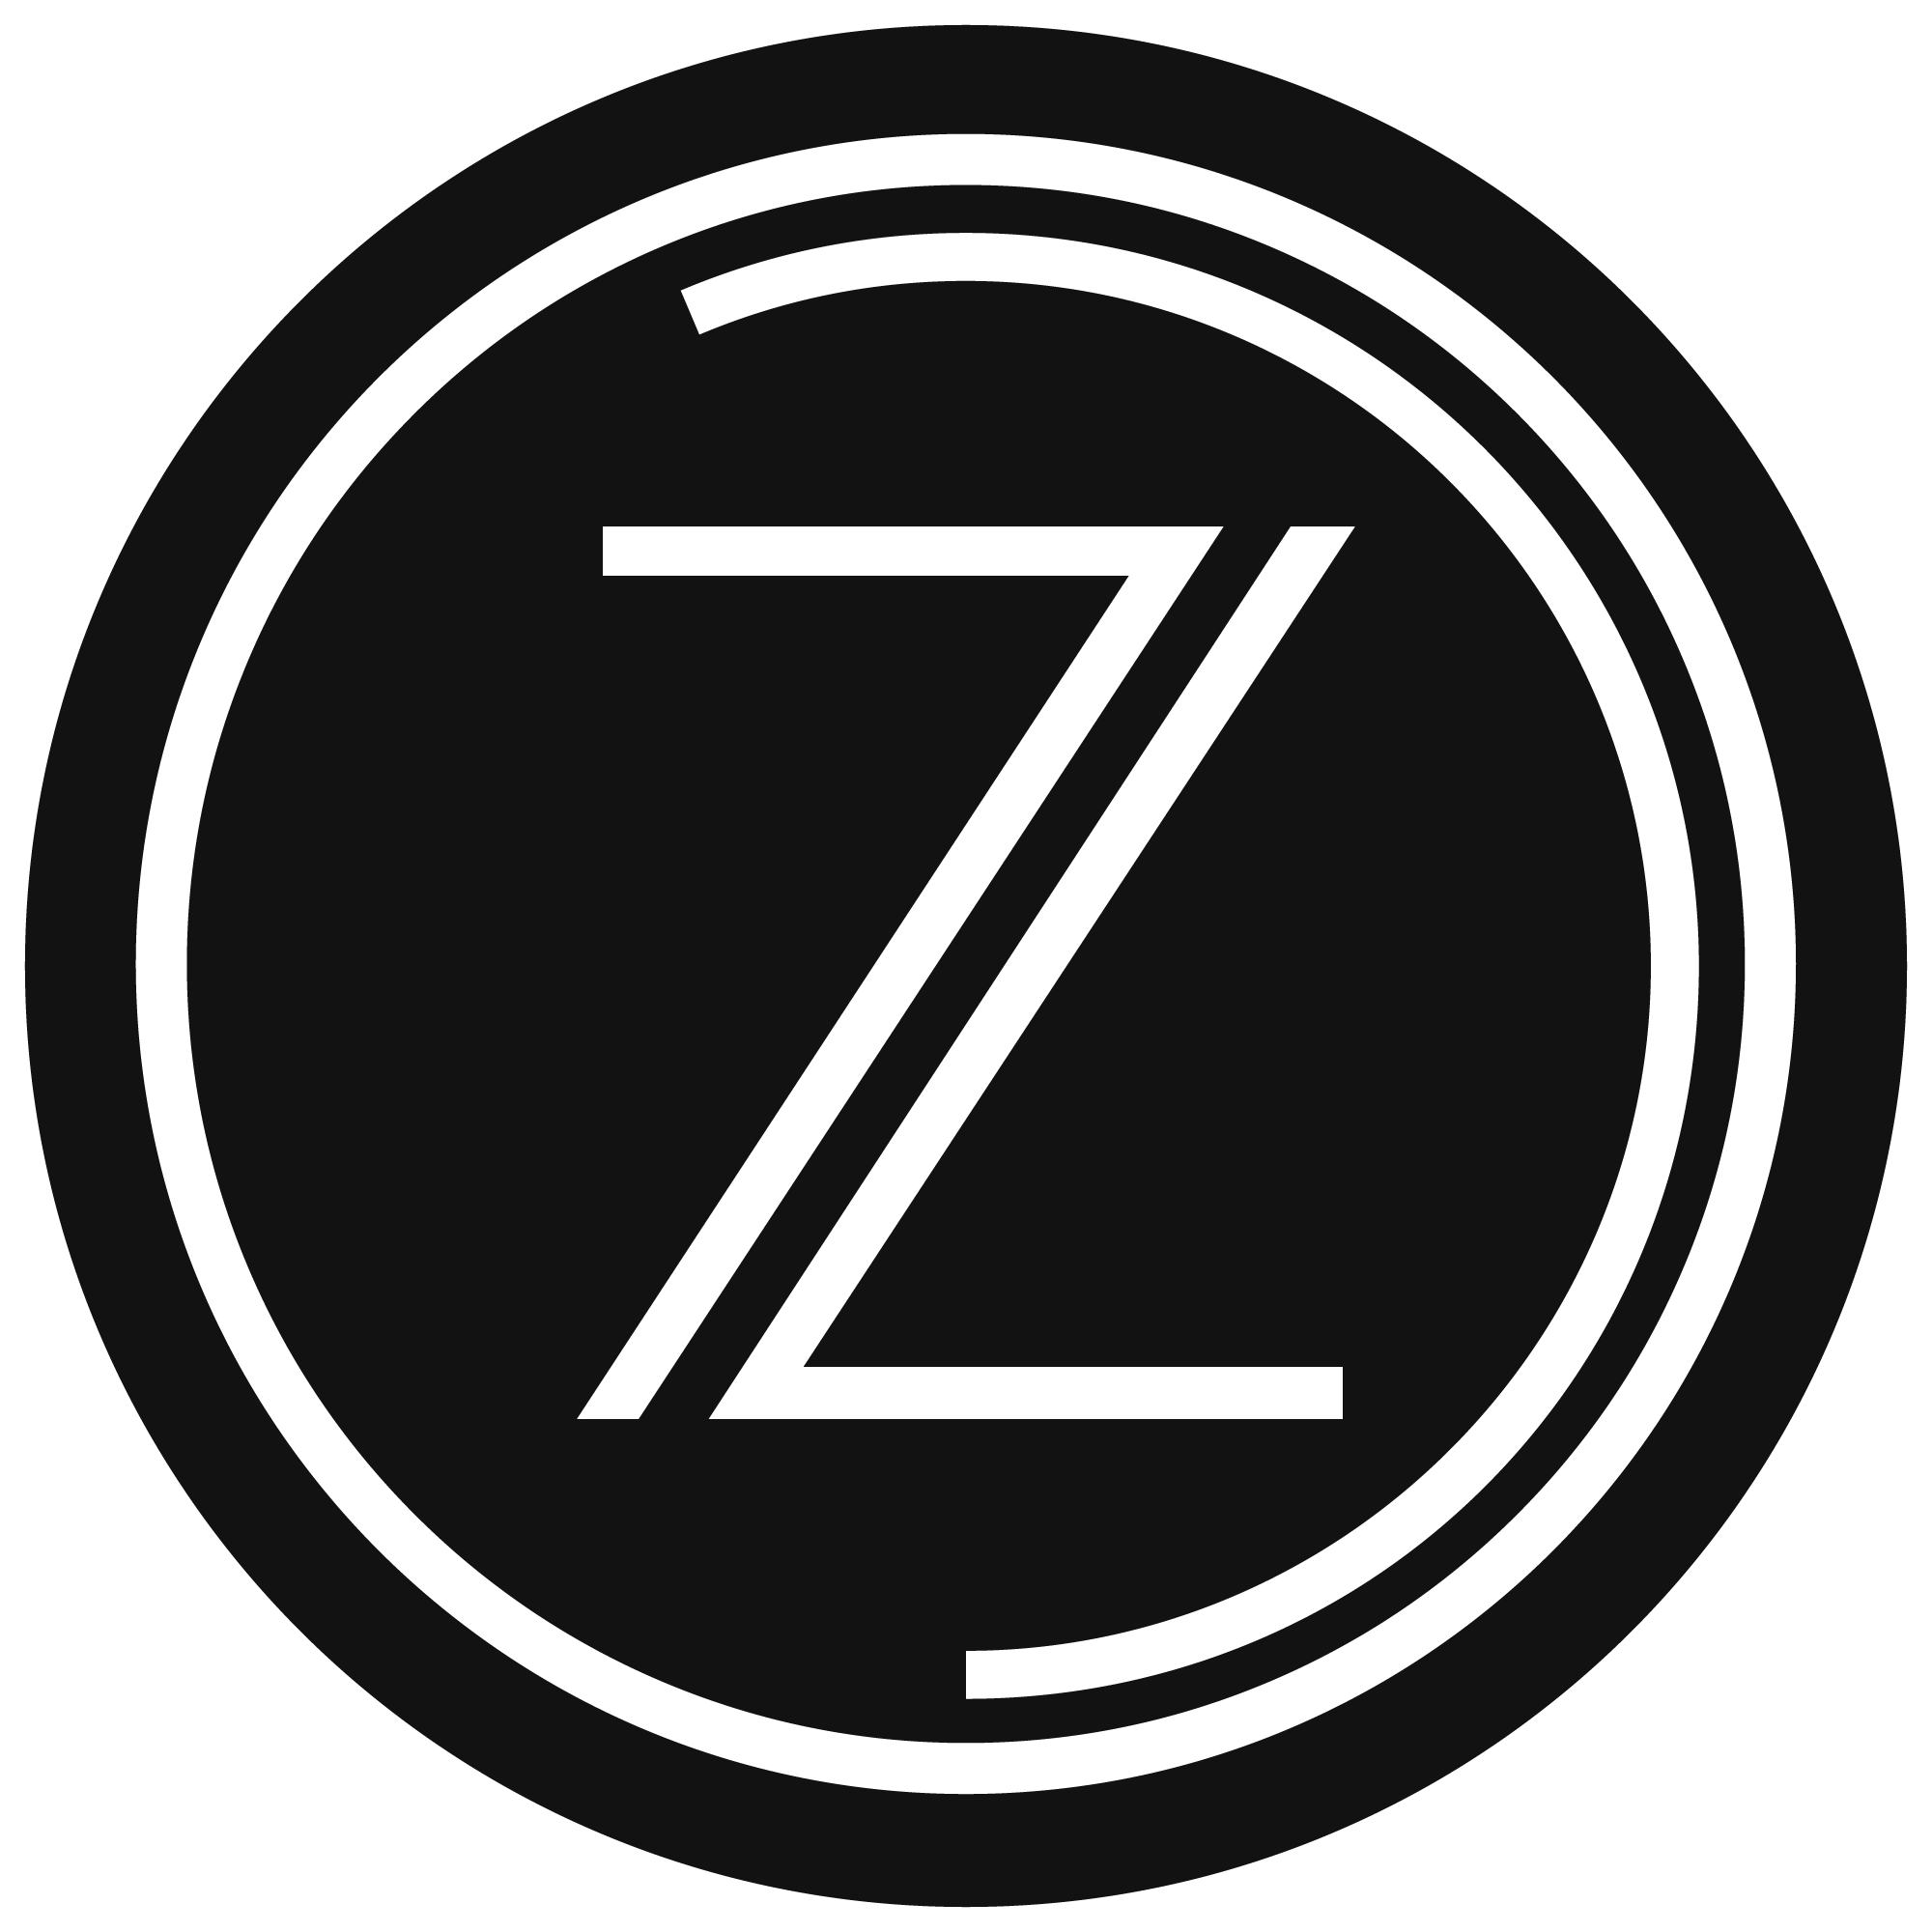 Letter Z PNG Image Transparent